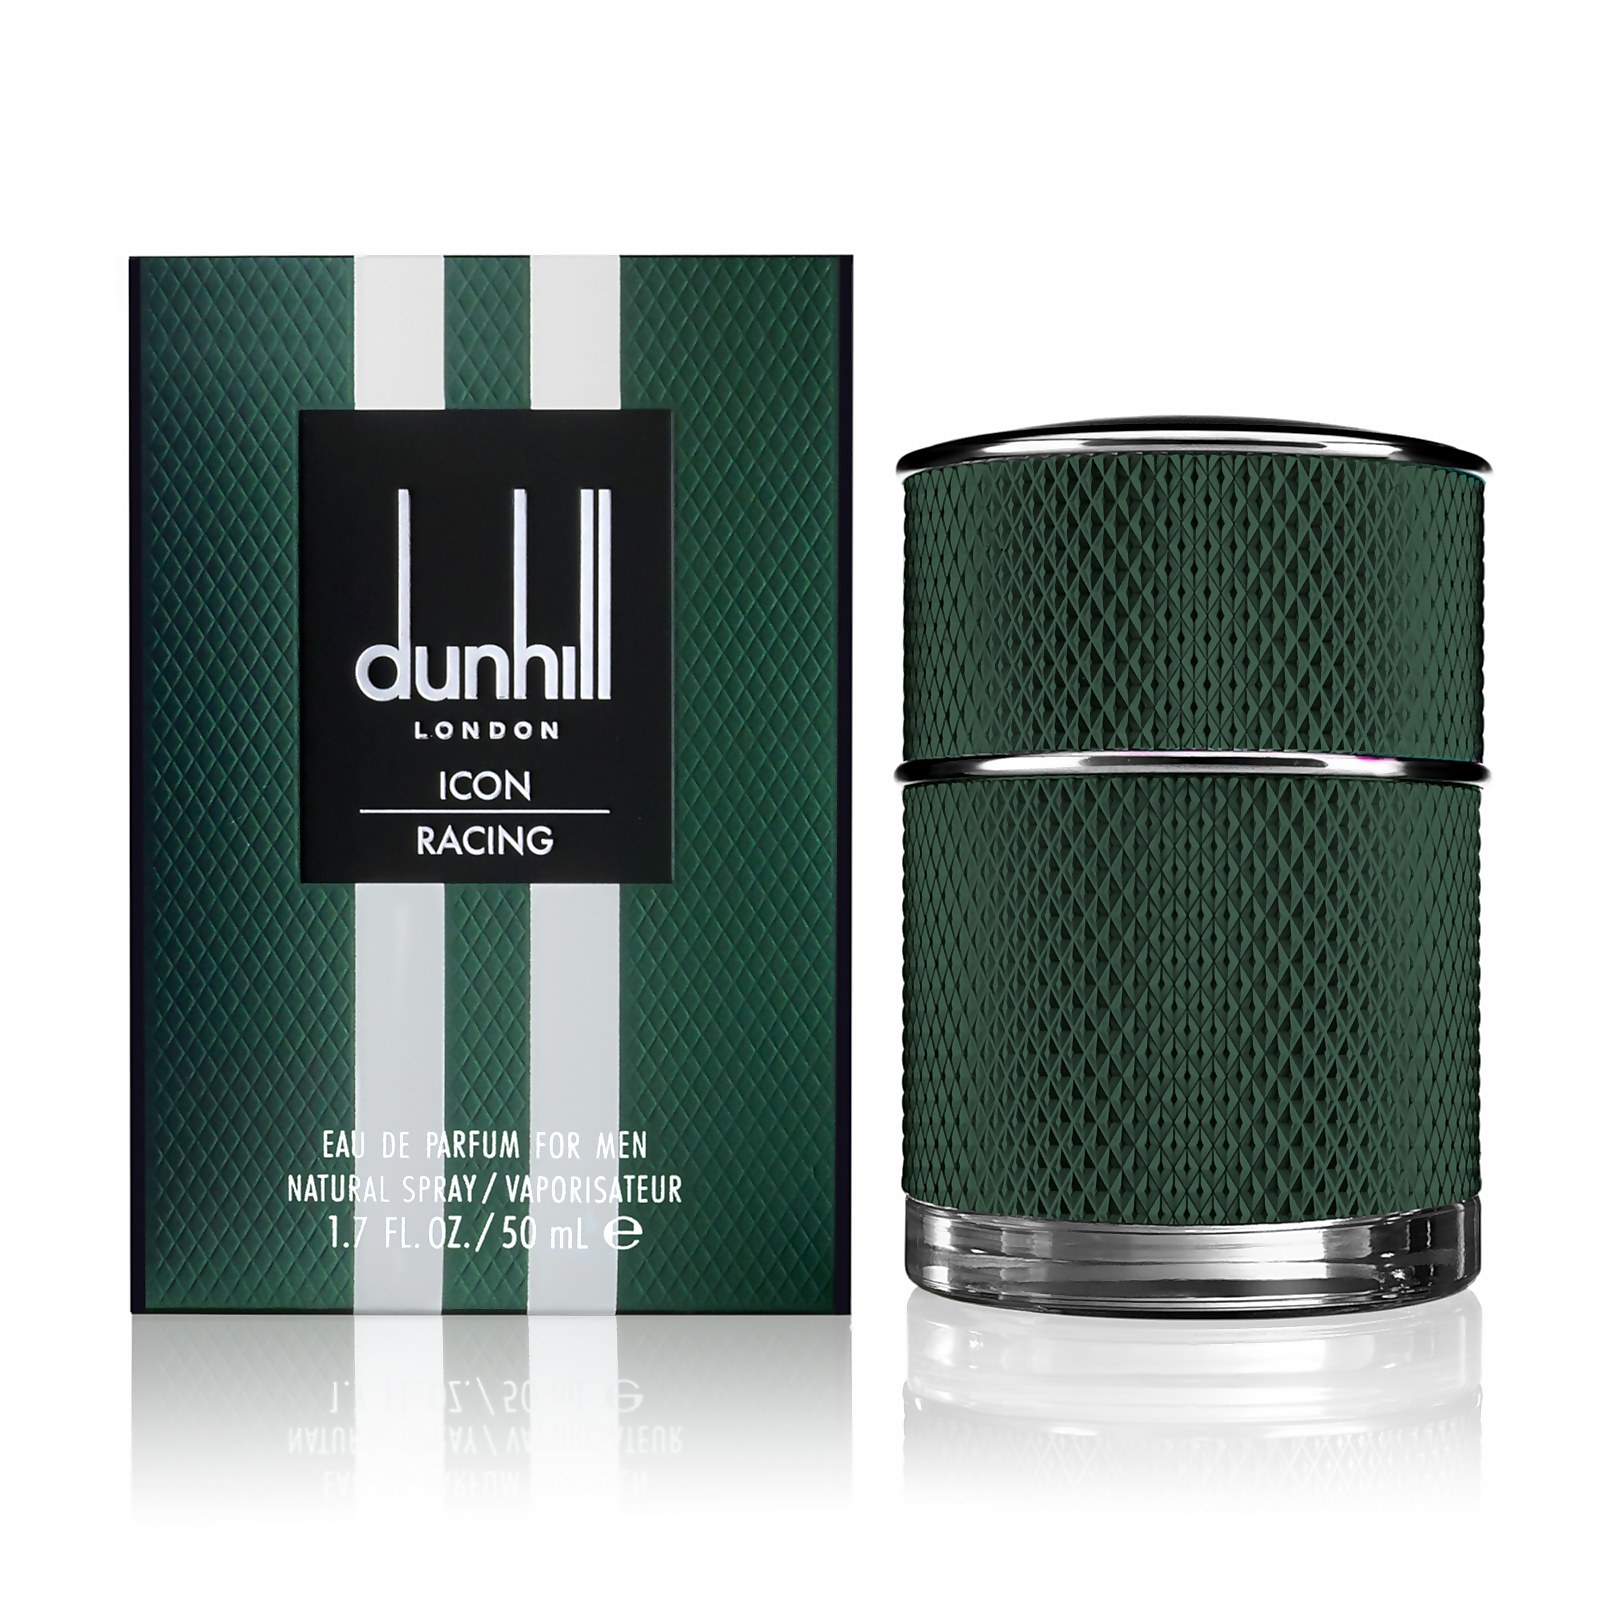 Photos - Women's Fragrance Dunhill London Icon Racing Eau de Parfum 50ml DH80641 